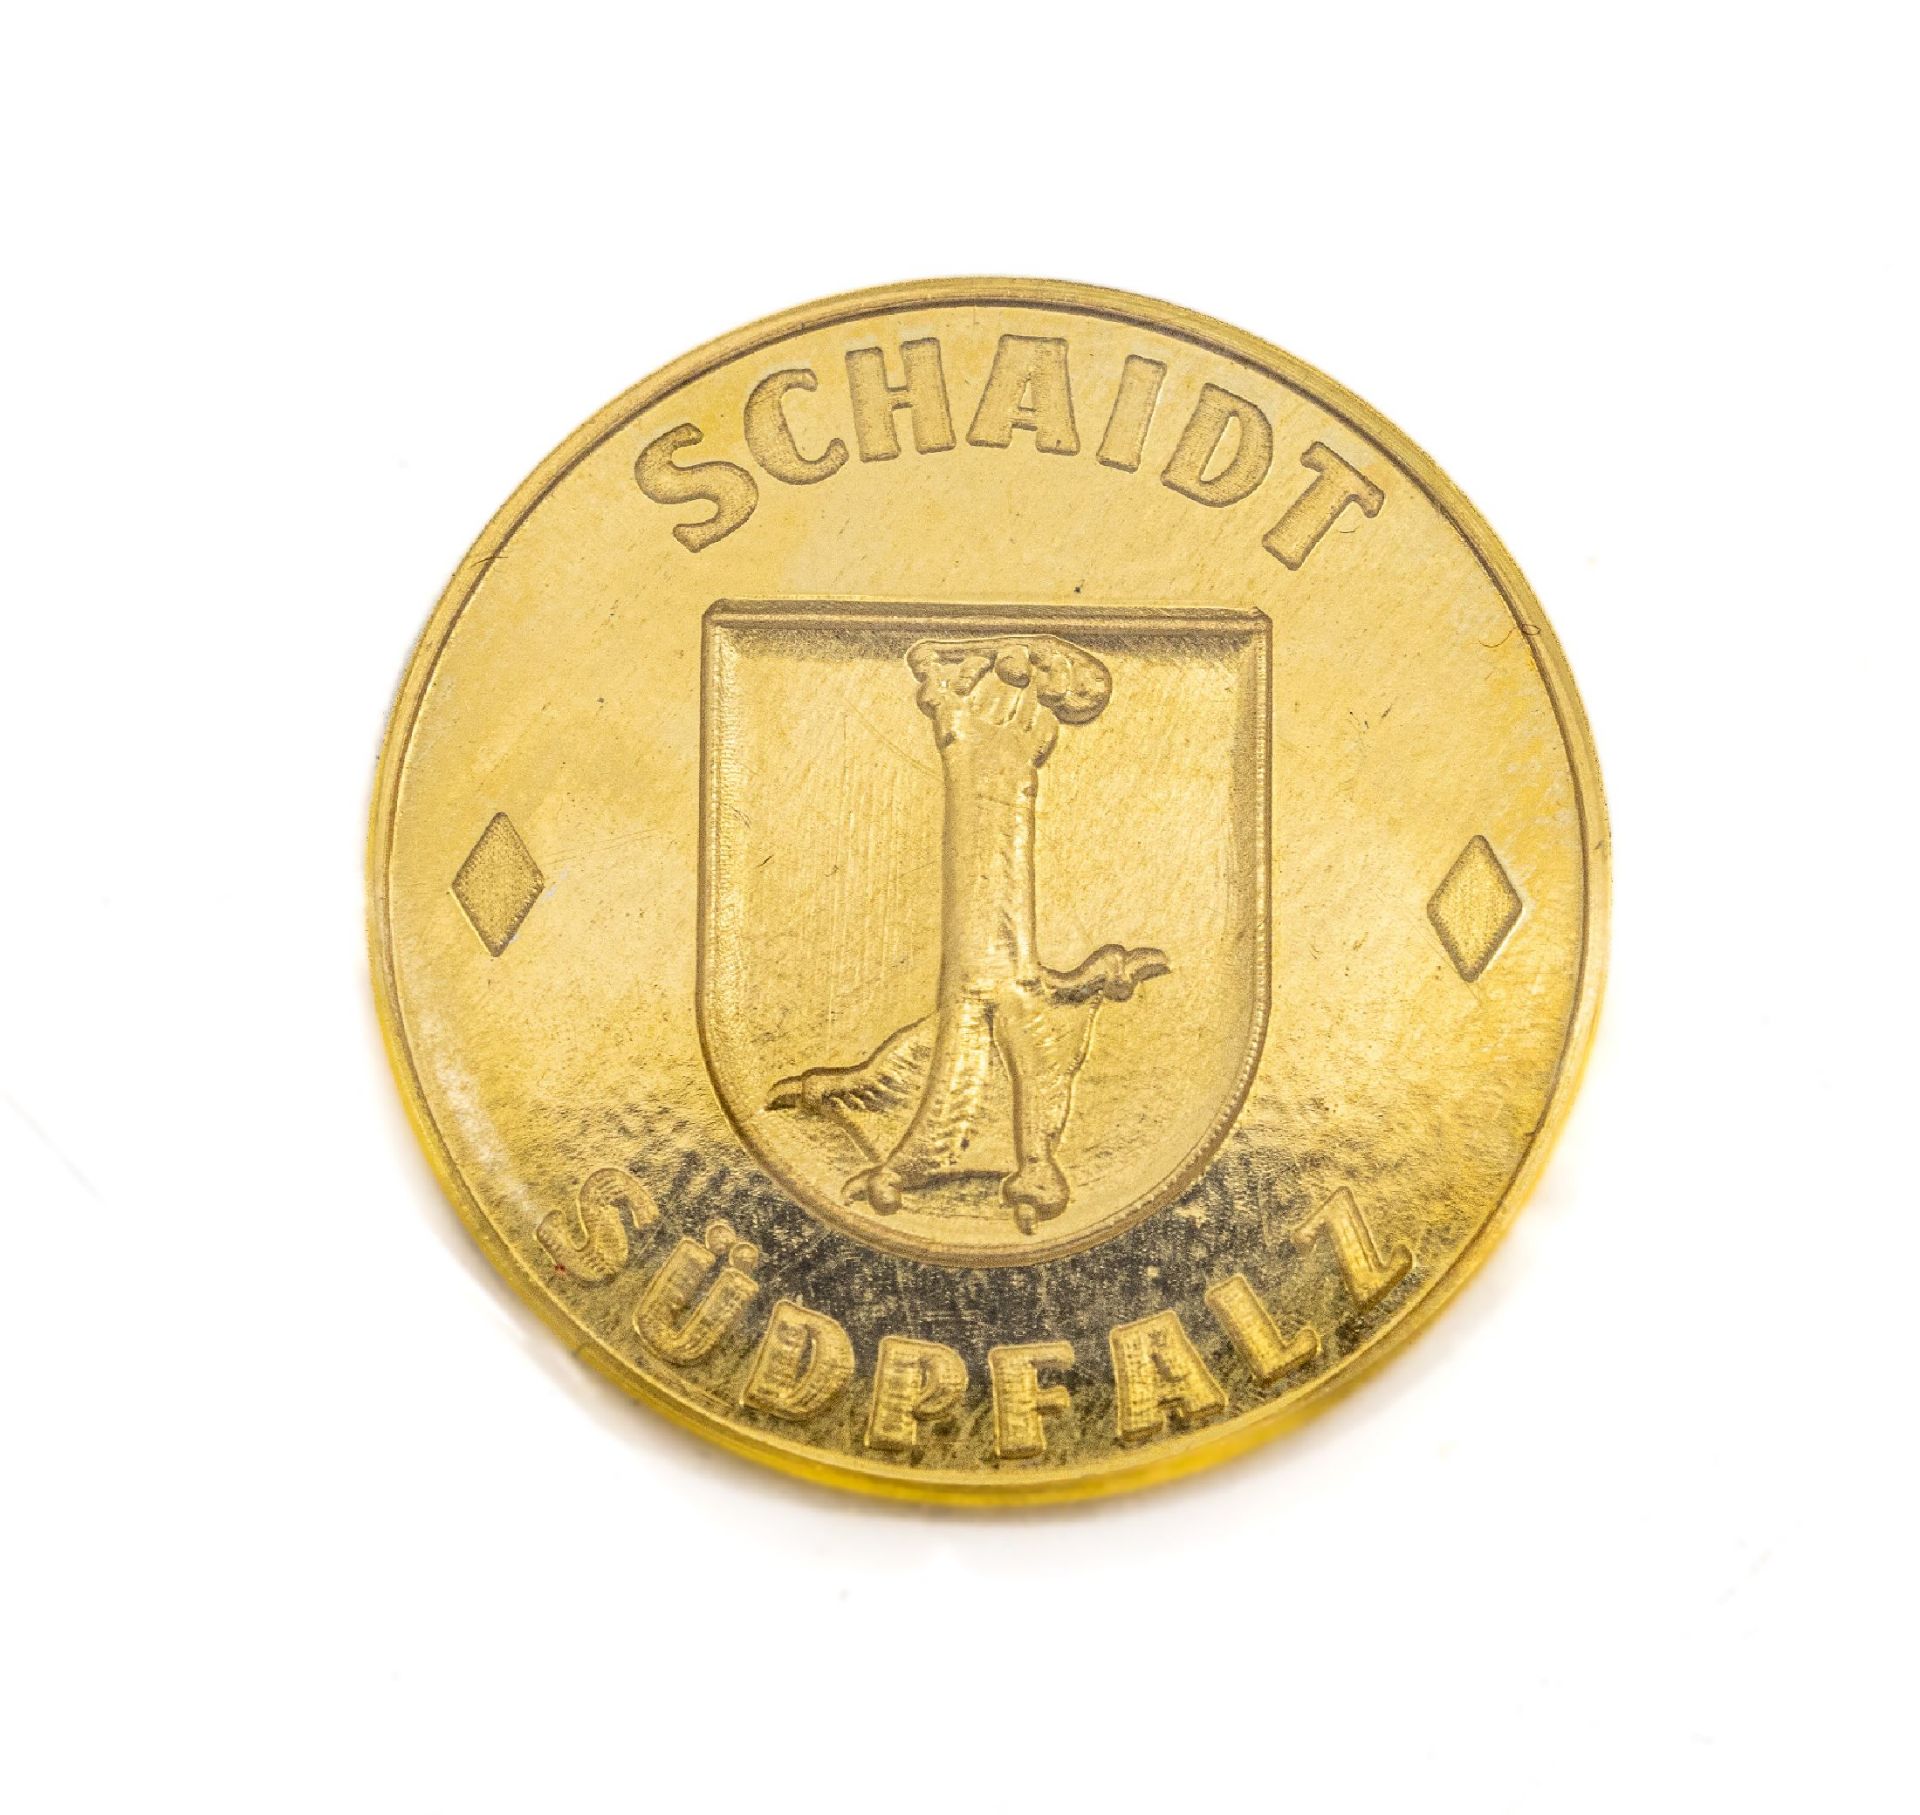 Goldmedaille Schaidt Südpfalz,   GG 986/000, eingeschweißt